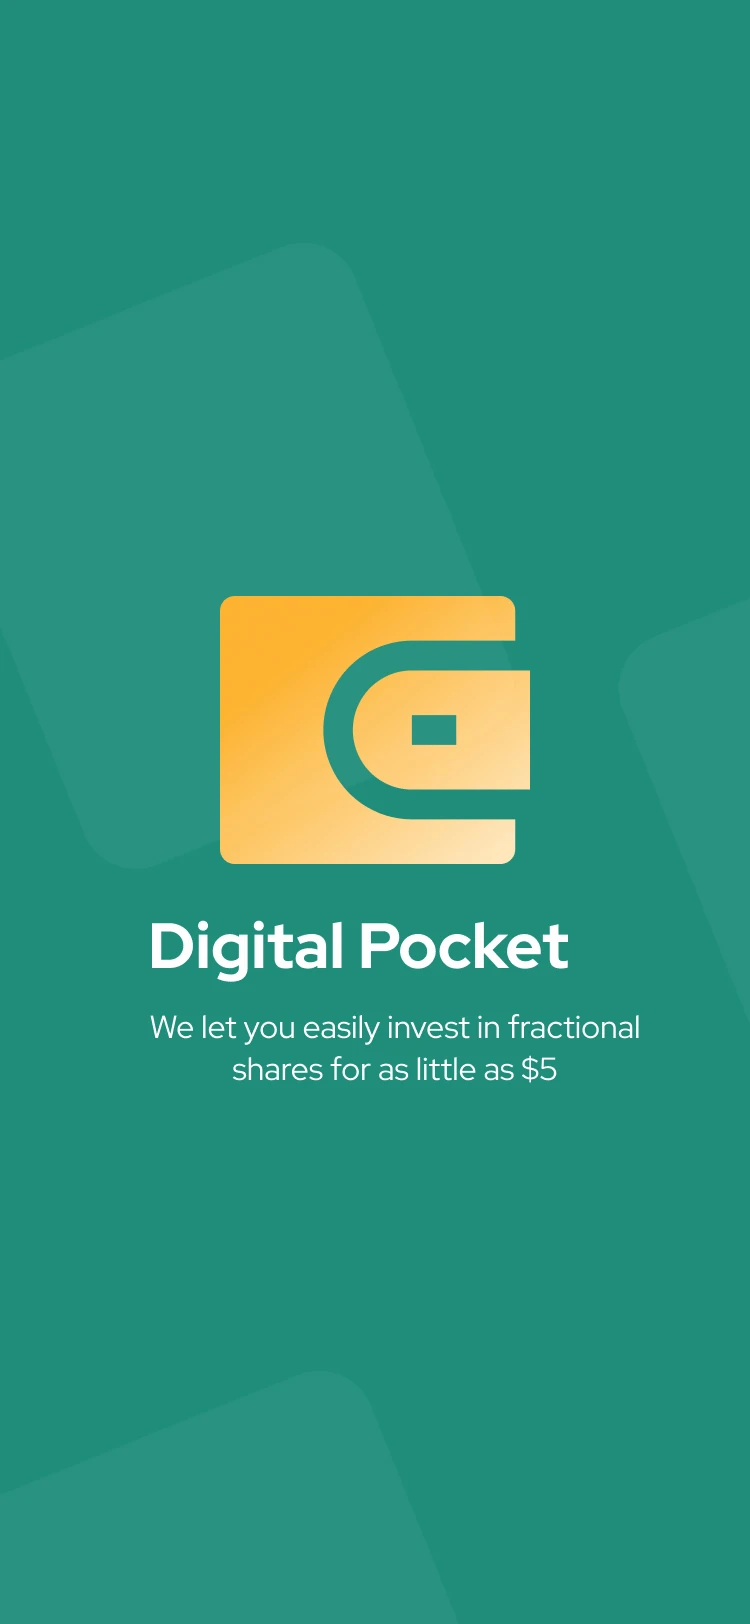 50屏数字口袋电子钱包应用UI设计套件素材 Digital Pocket Wallet app .xd .sketch .figma插图13